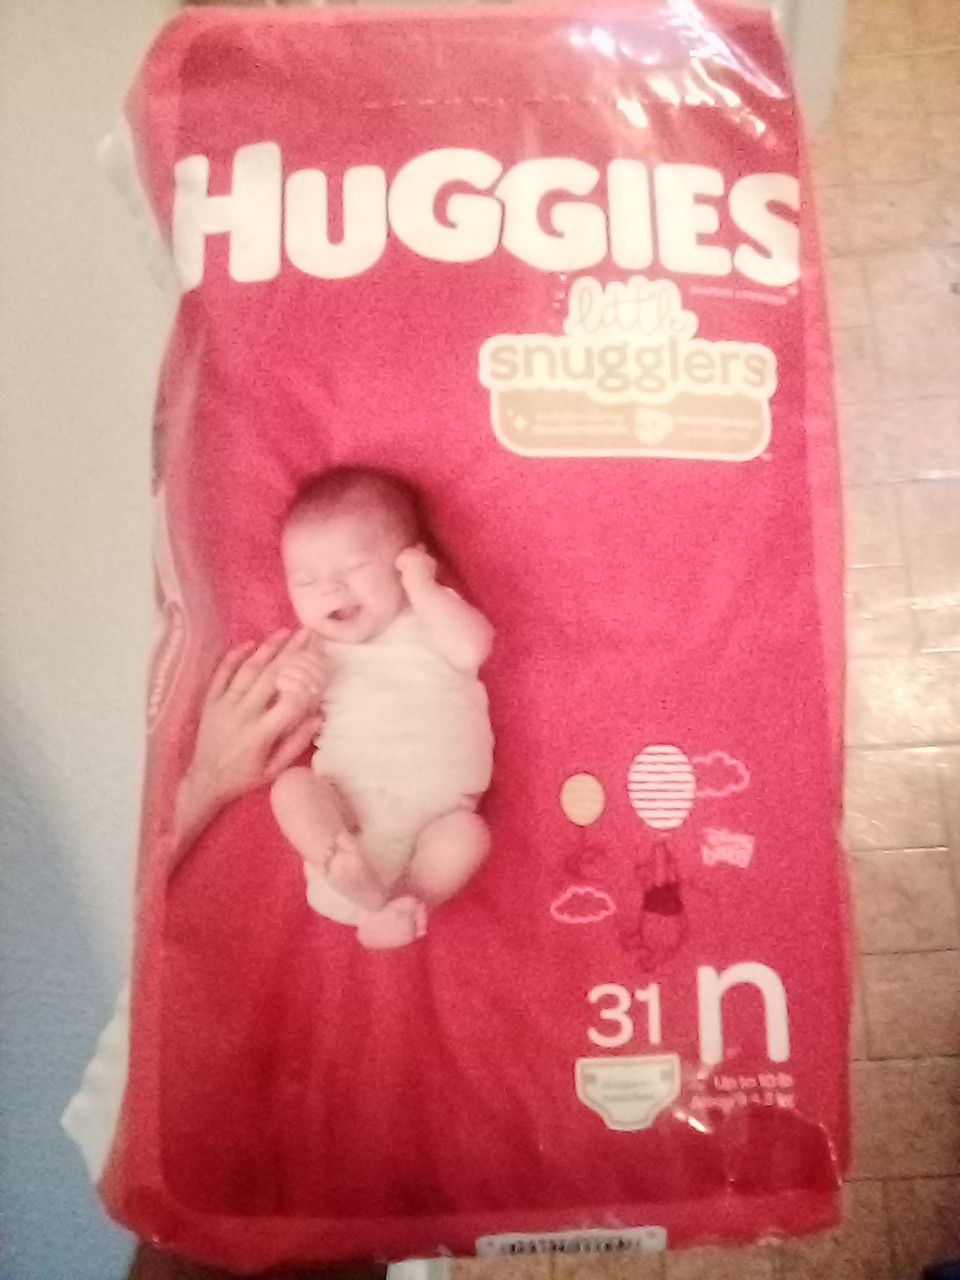 Huggies Newborn diapers.